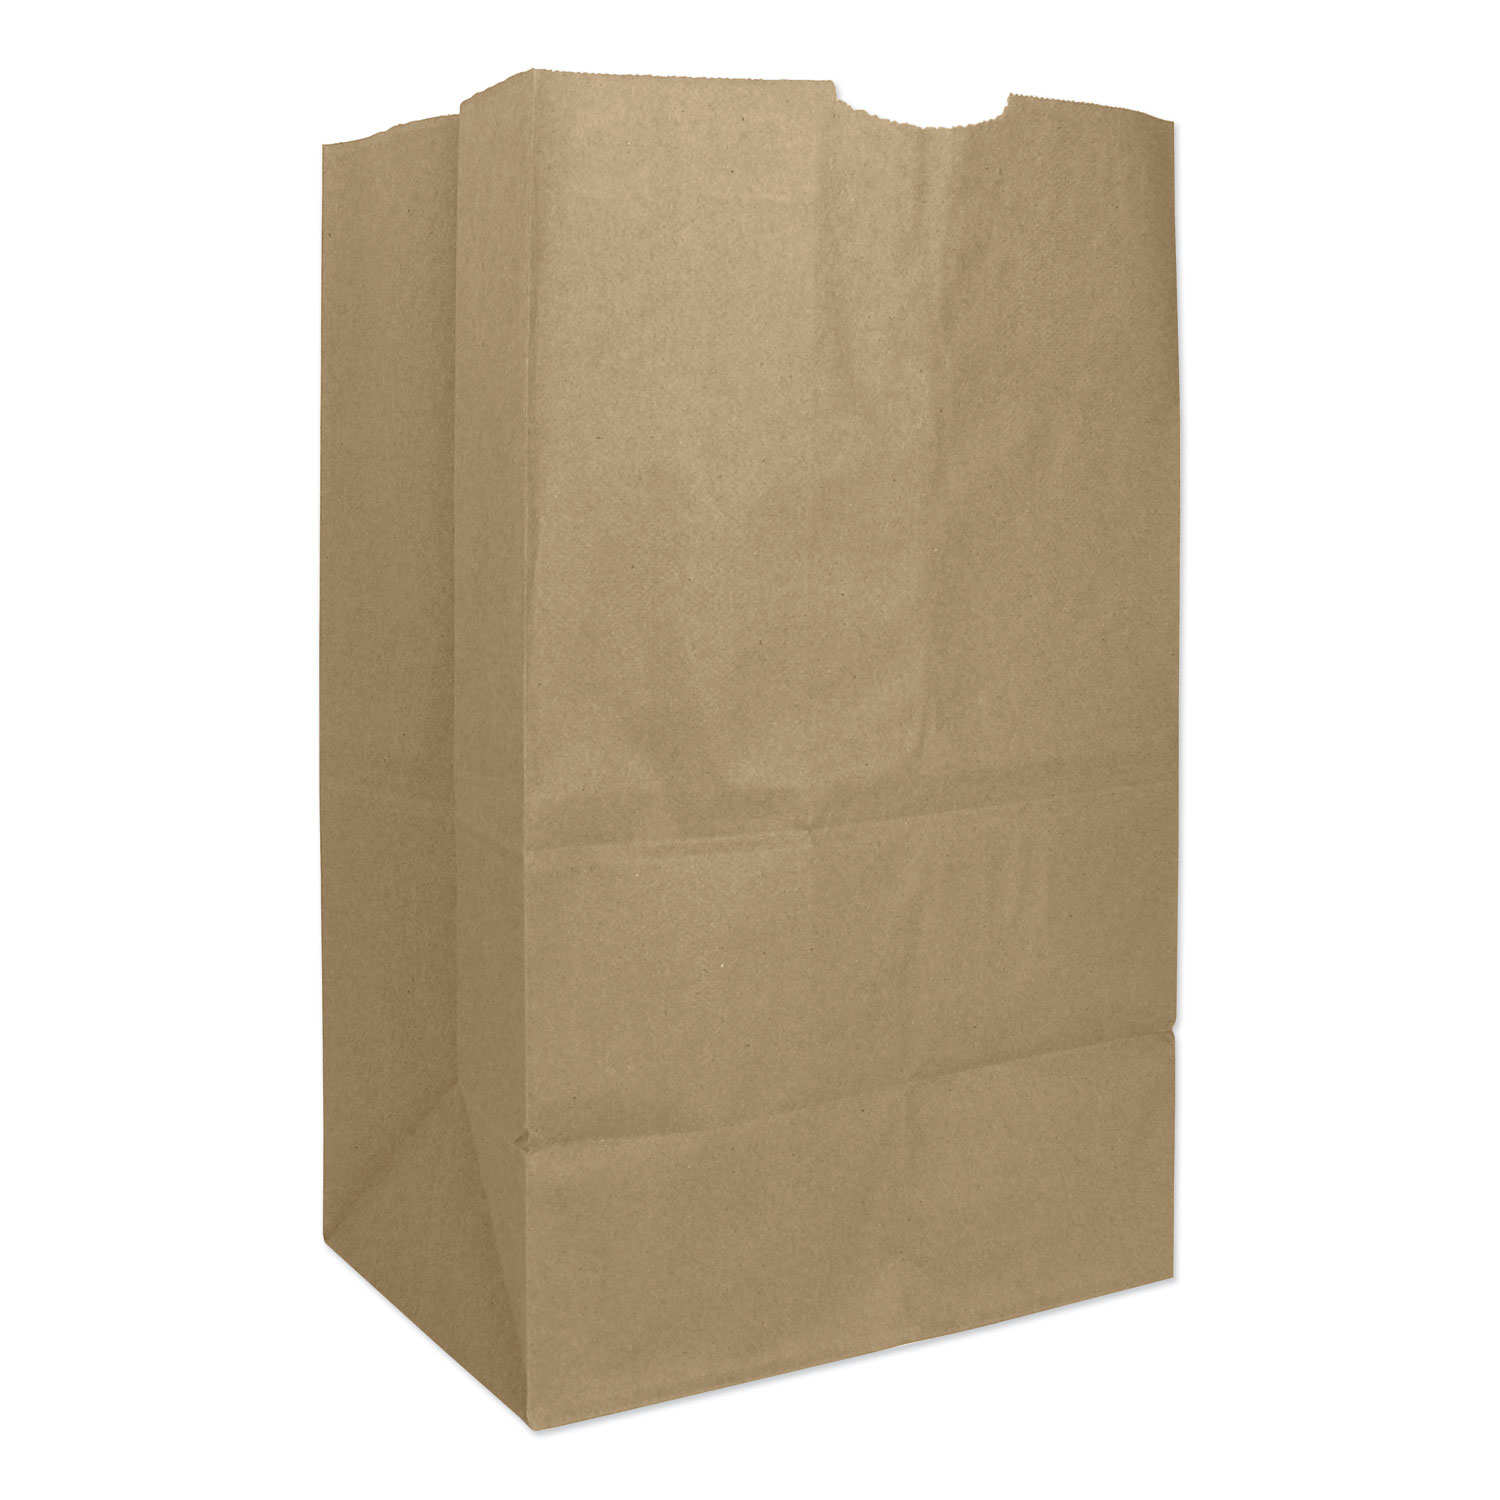  General 30921 Grocery Paper Bags, 57 lbs Capacity, #20 Squat, 8.25w x 5.94d x 13.38h, Kraft, 500 Bags (BAGGX2060S) 